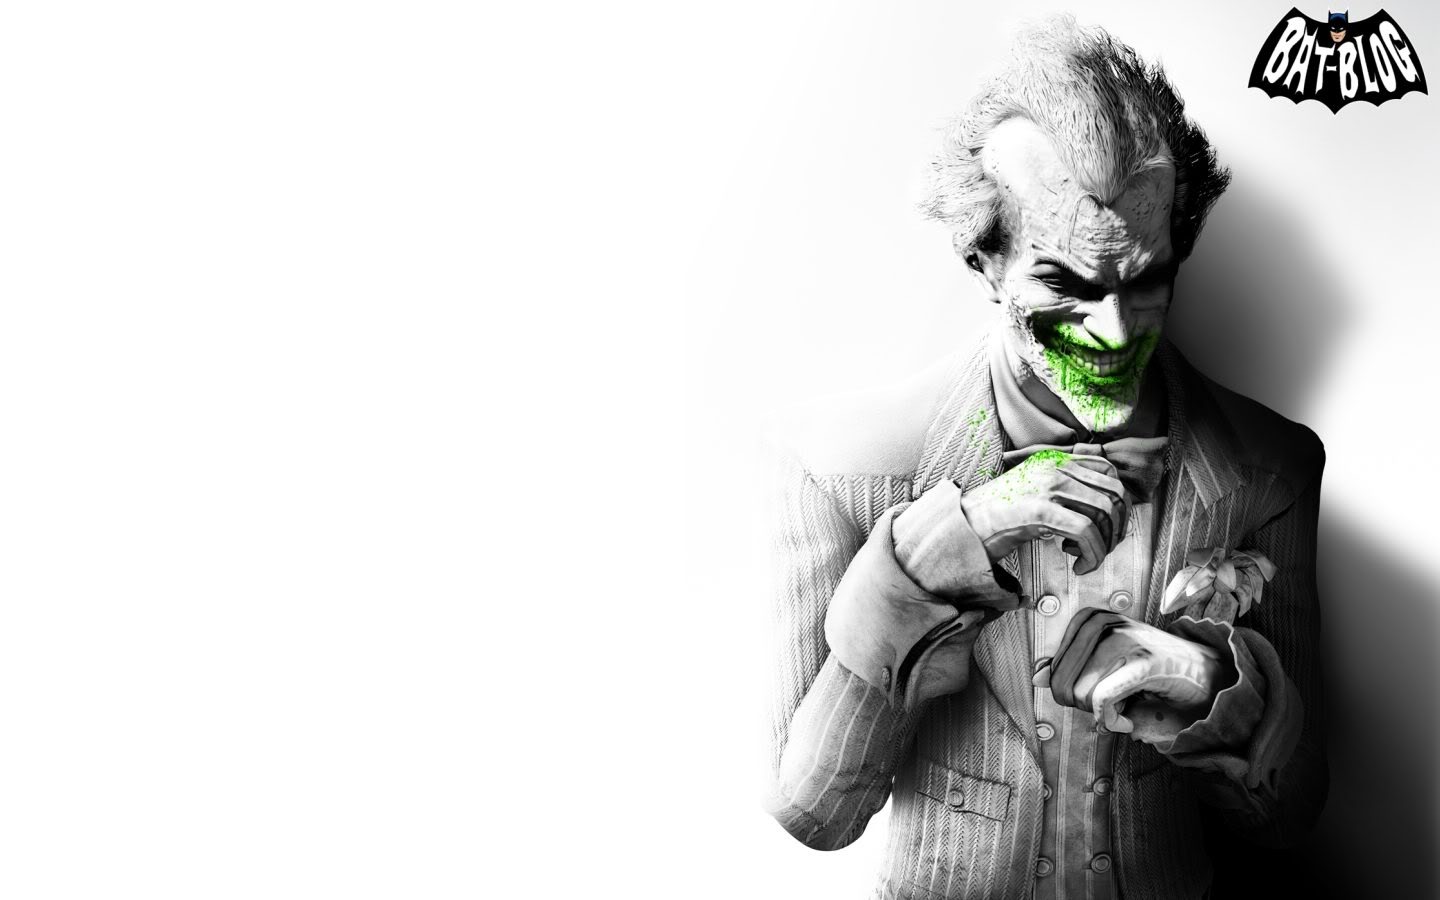 fonds d'écran frikis,joker,supervillain,personnage fictif,noir et blanc,illustration